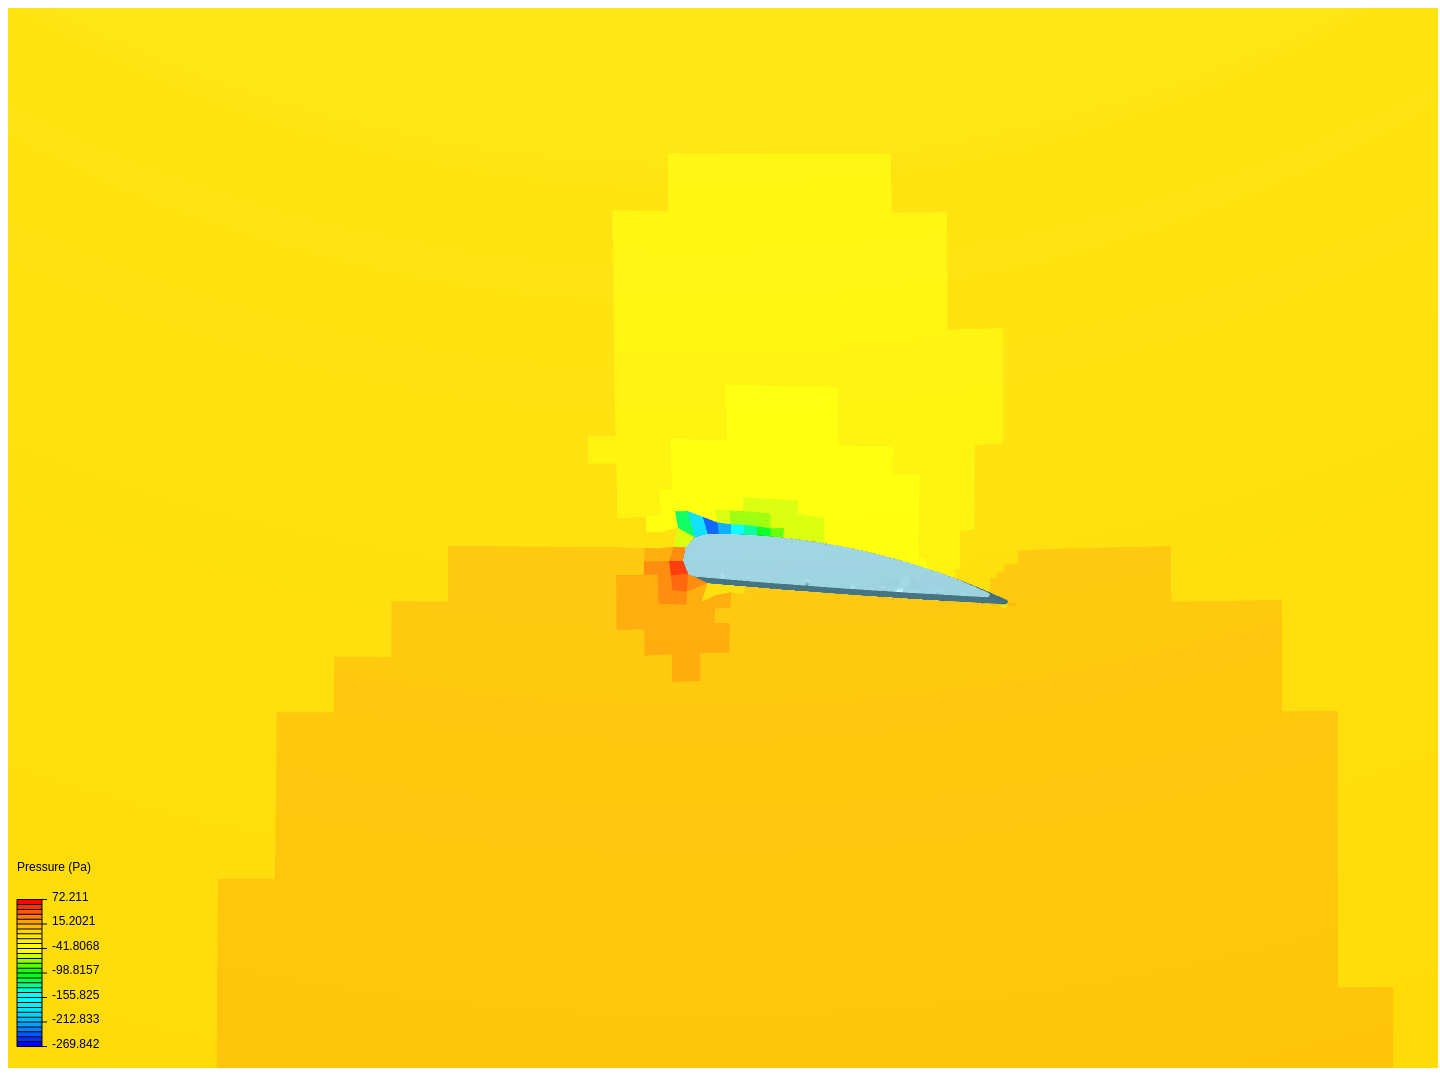 Wing Design Analysis image